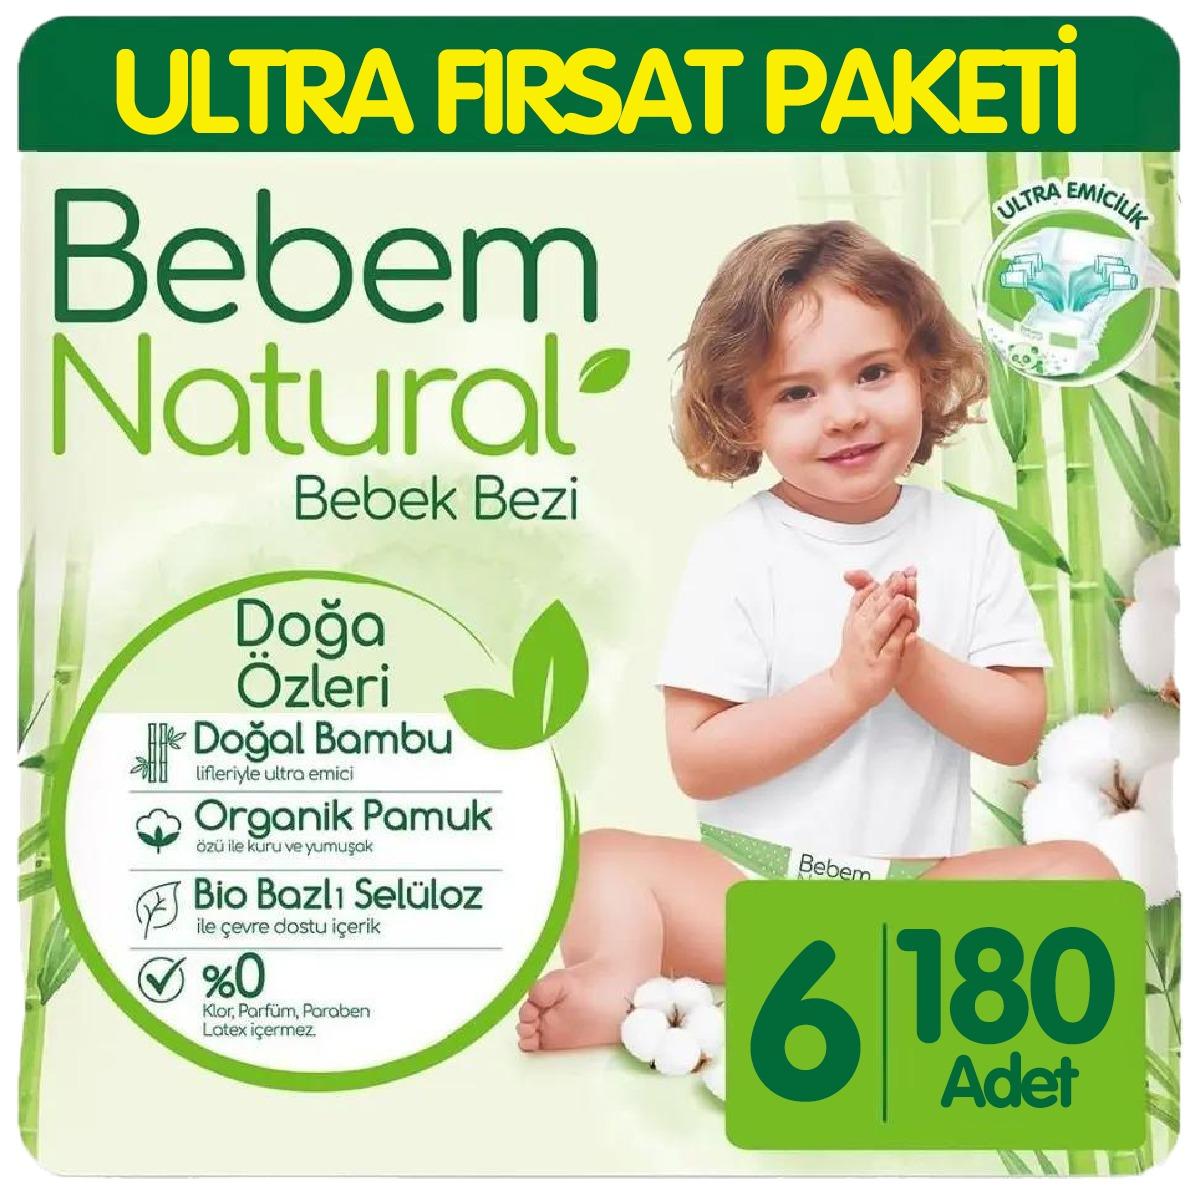 Bebem Natural Bebek Bezi Ultra Fırsat Paketi 6 Beden 60x3 180 Adet